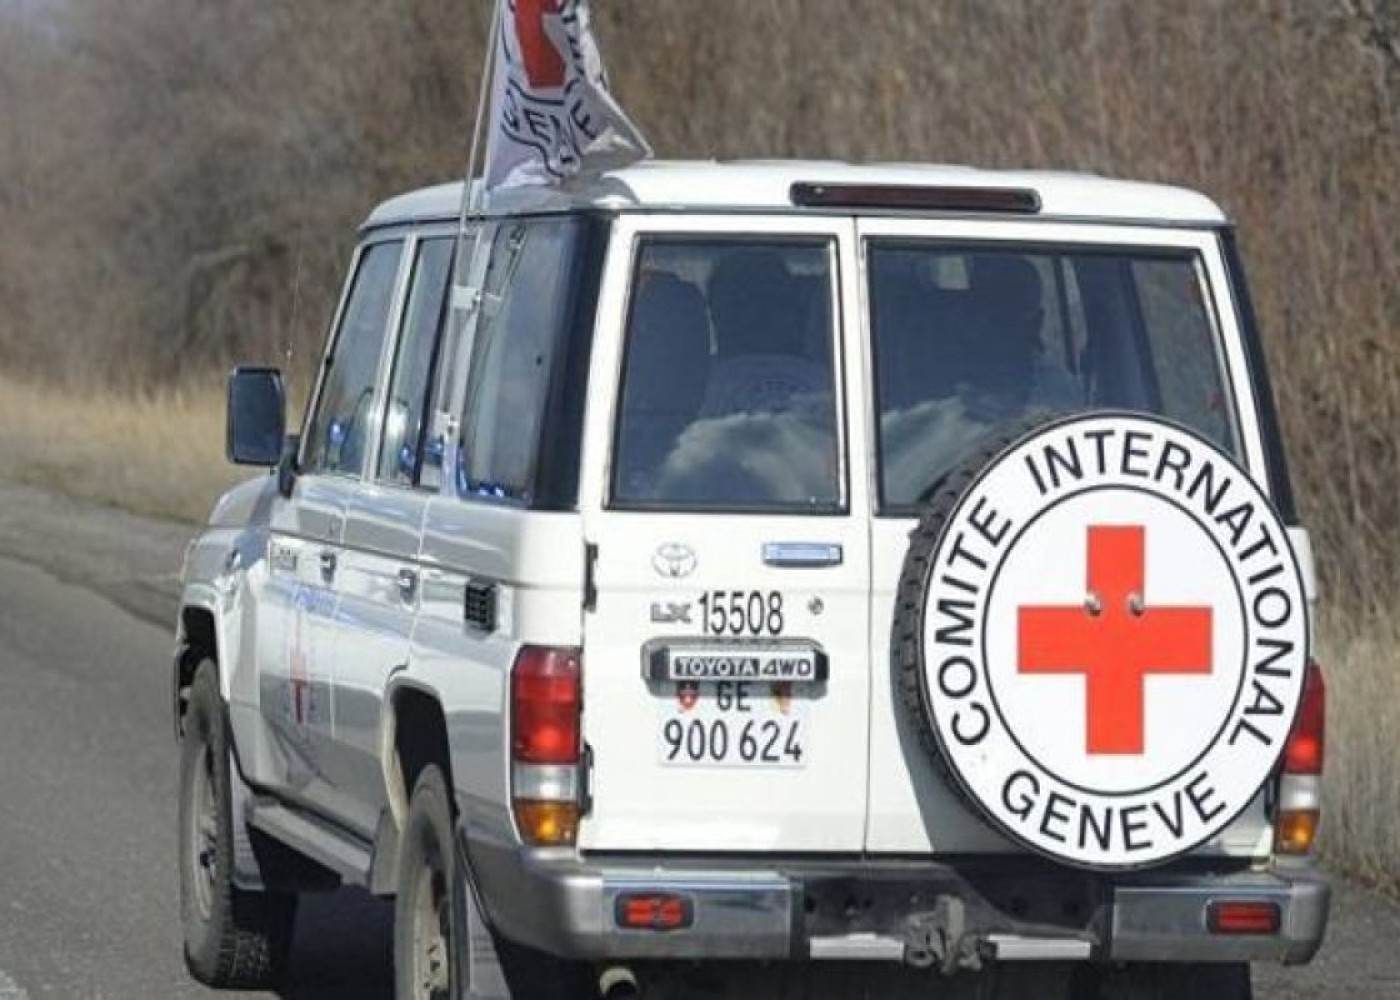 Azərbaycan erməni əsilli yaralı hərbçilərə tibbi yardım göstərməyə hazırdır